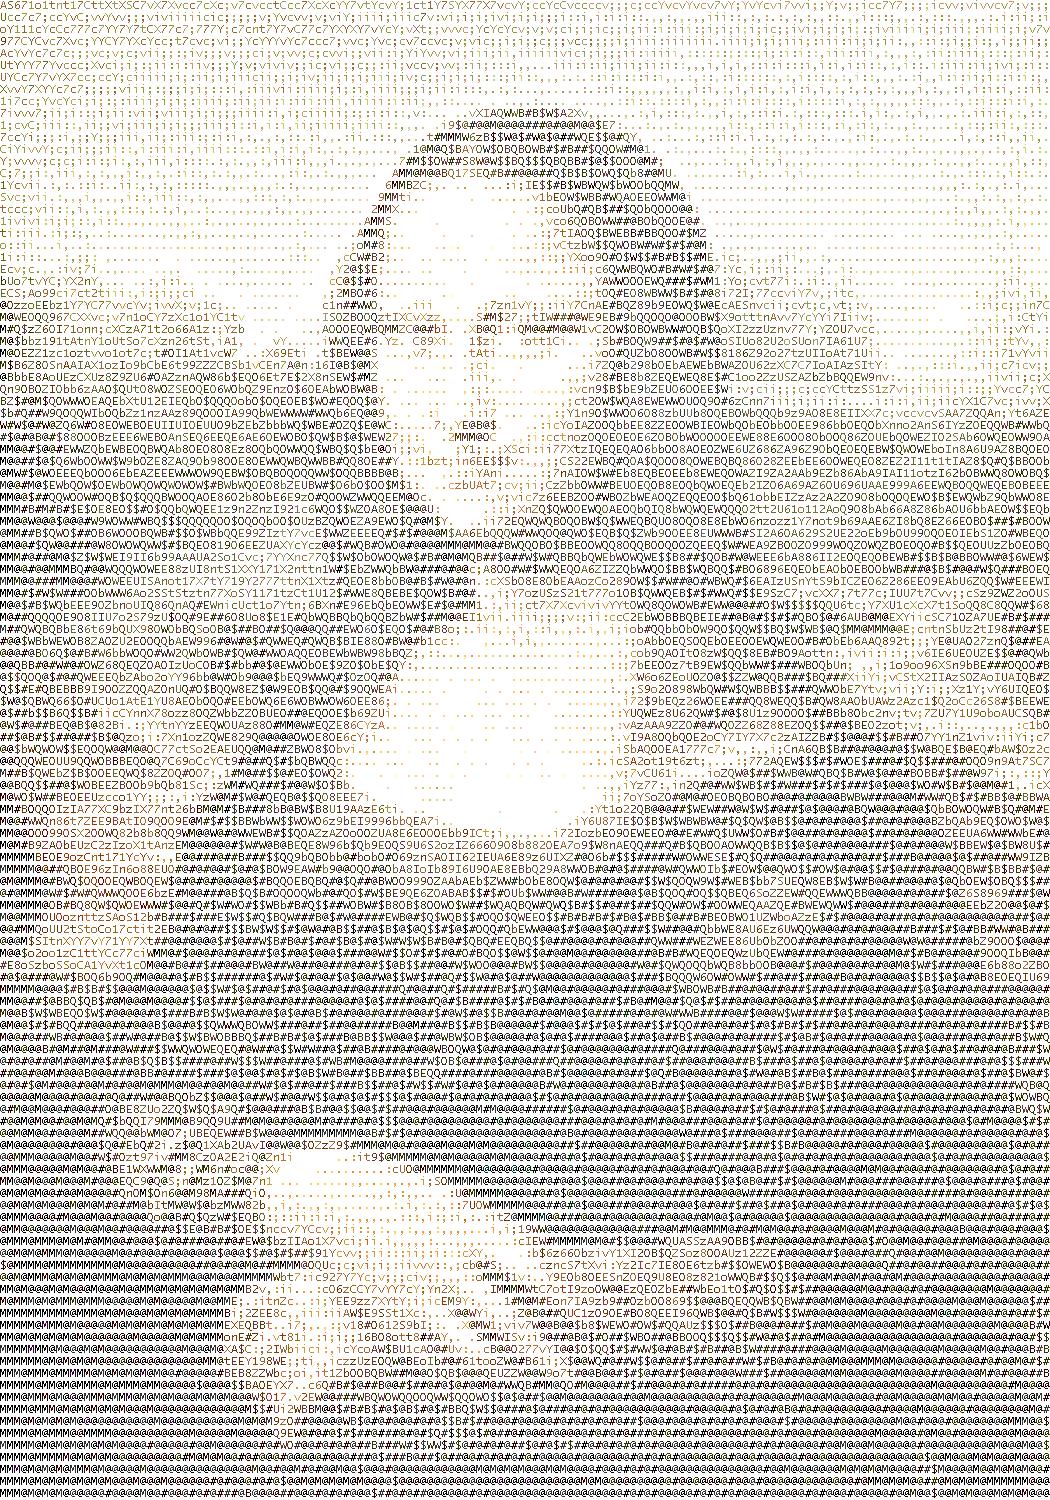 ASCII Mona Lisa